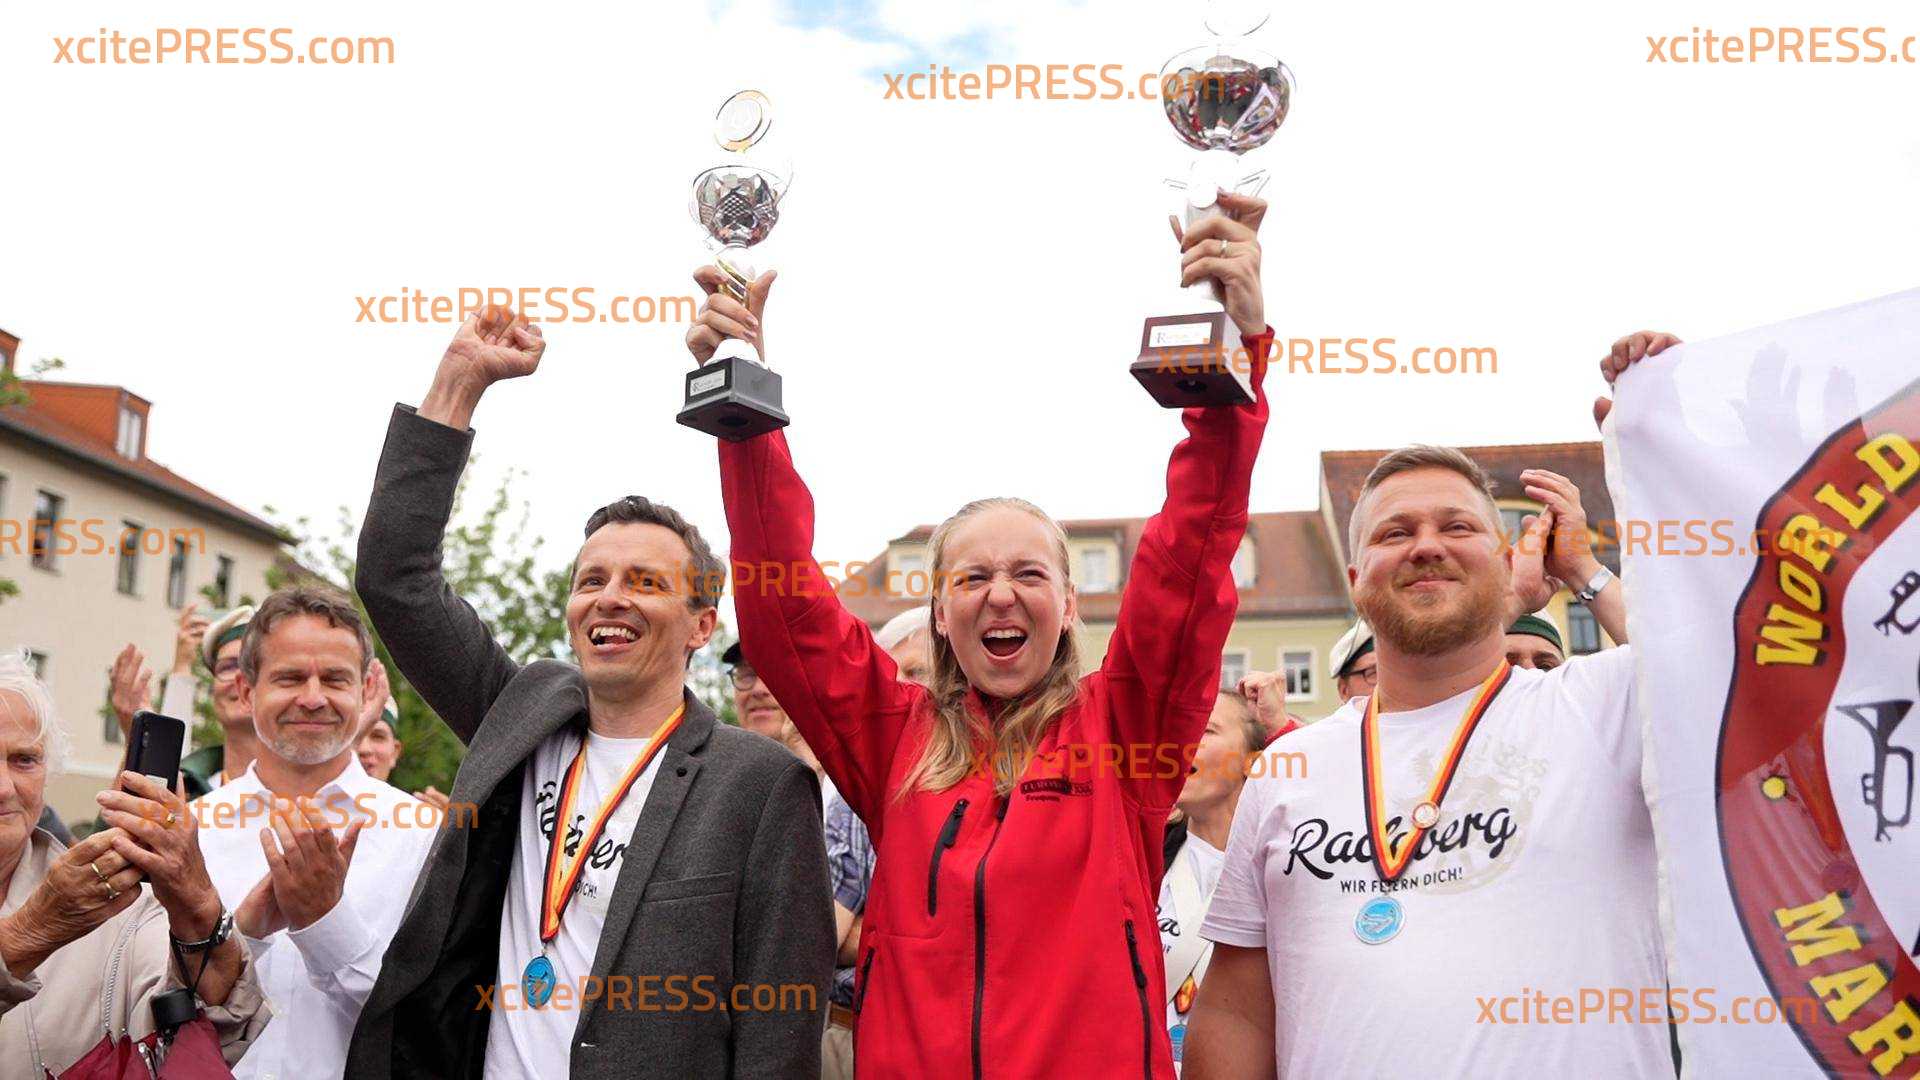 Radeberg feiert Weltmeister: Triumph bei der Weltmeisterschaft der Spielmannszüge: Ministerpräsident gratuliert sächsischer Mannschaft per E-Mail